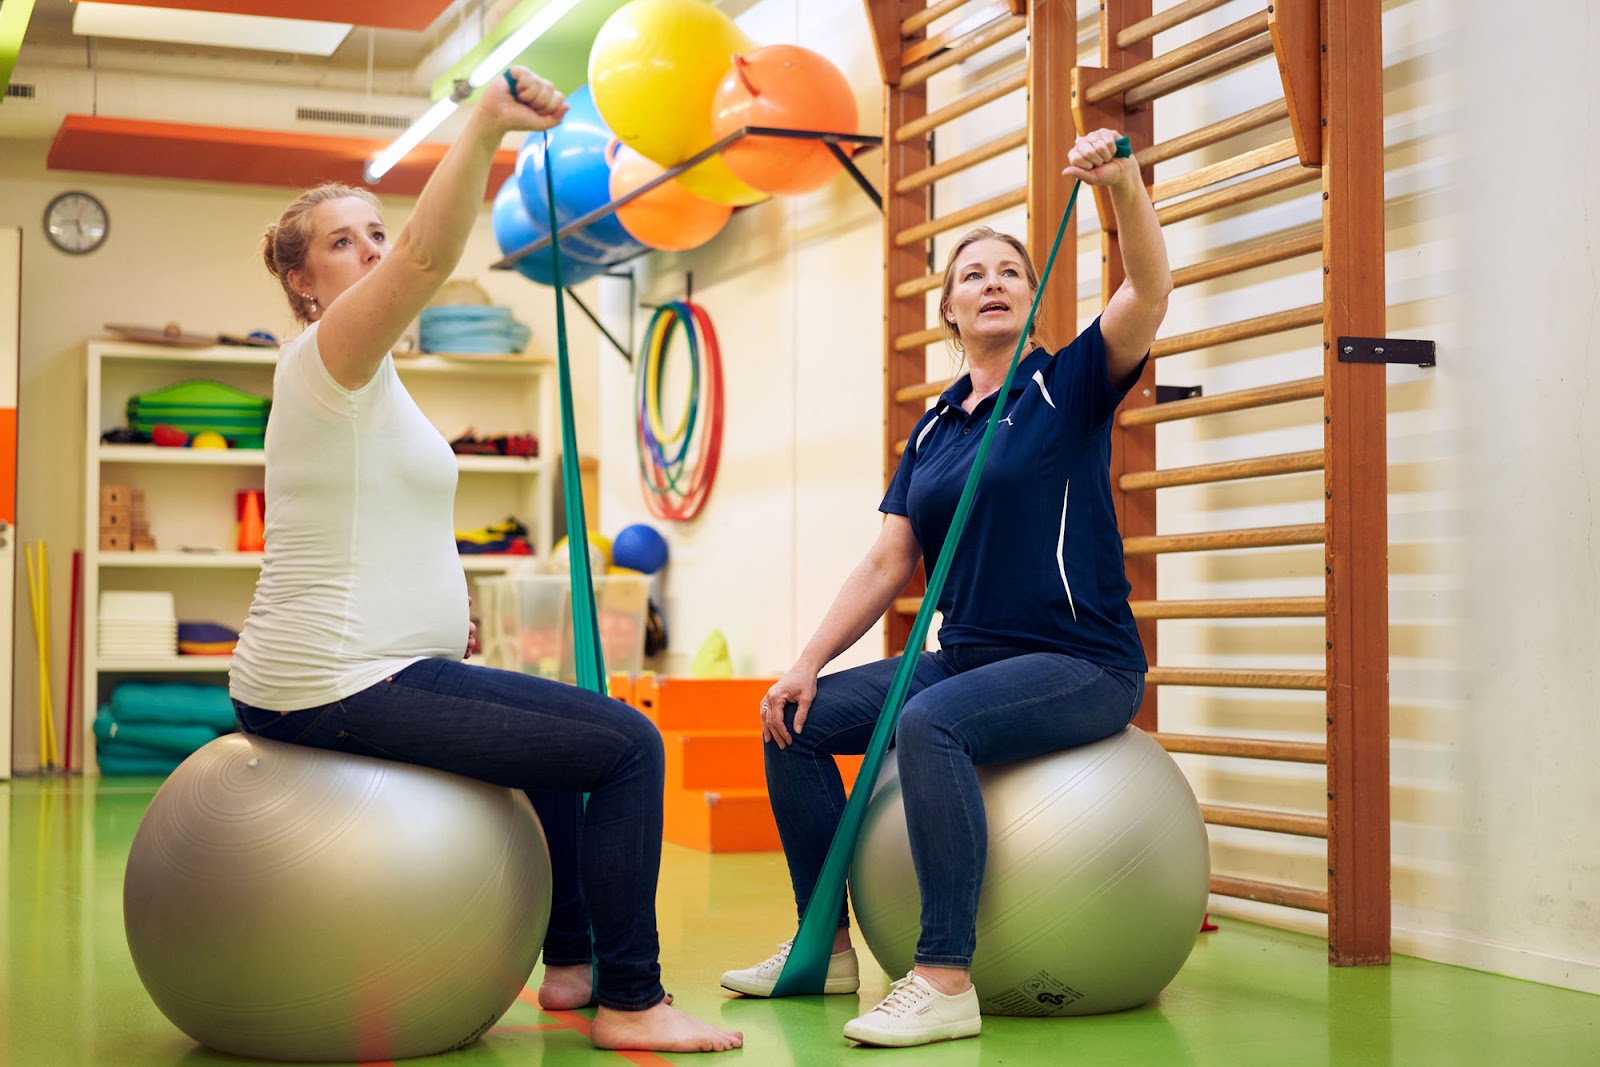 Een fysiotherapeut zit op een fitnessbal in een oefenzaal. Een patiënt zit ook op een fitnessbal. Ze traint met haar eigen lichaamsgewicht. Ze stretchen allebei hun armen.